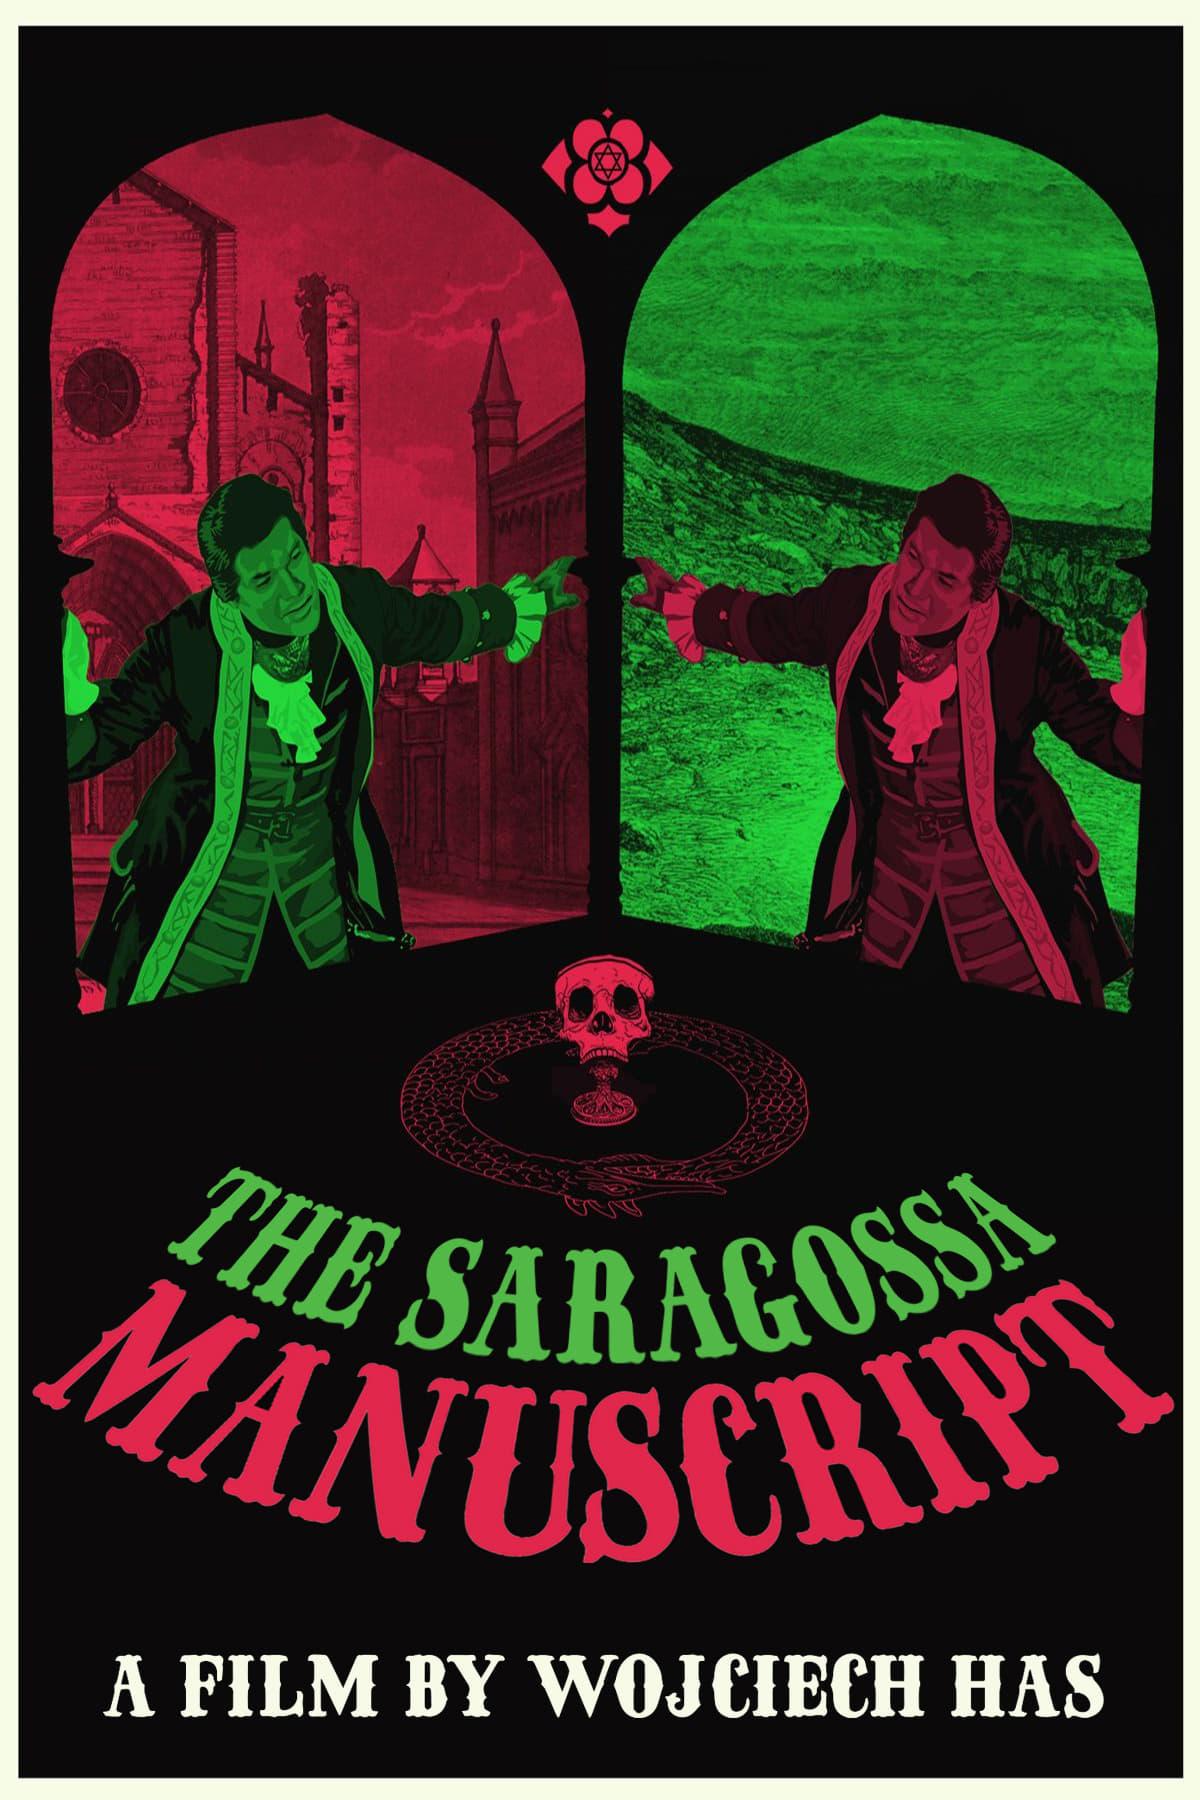 The Saragossa Manuscript poster